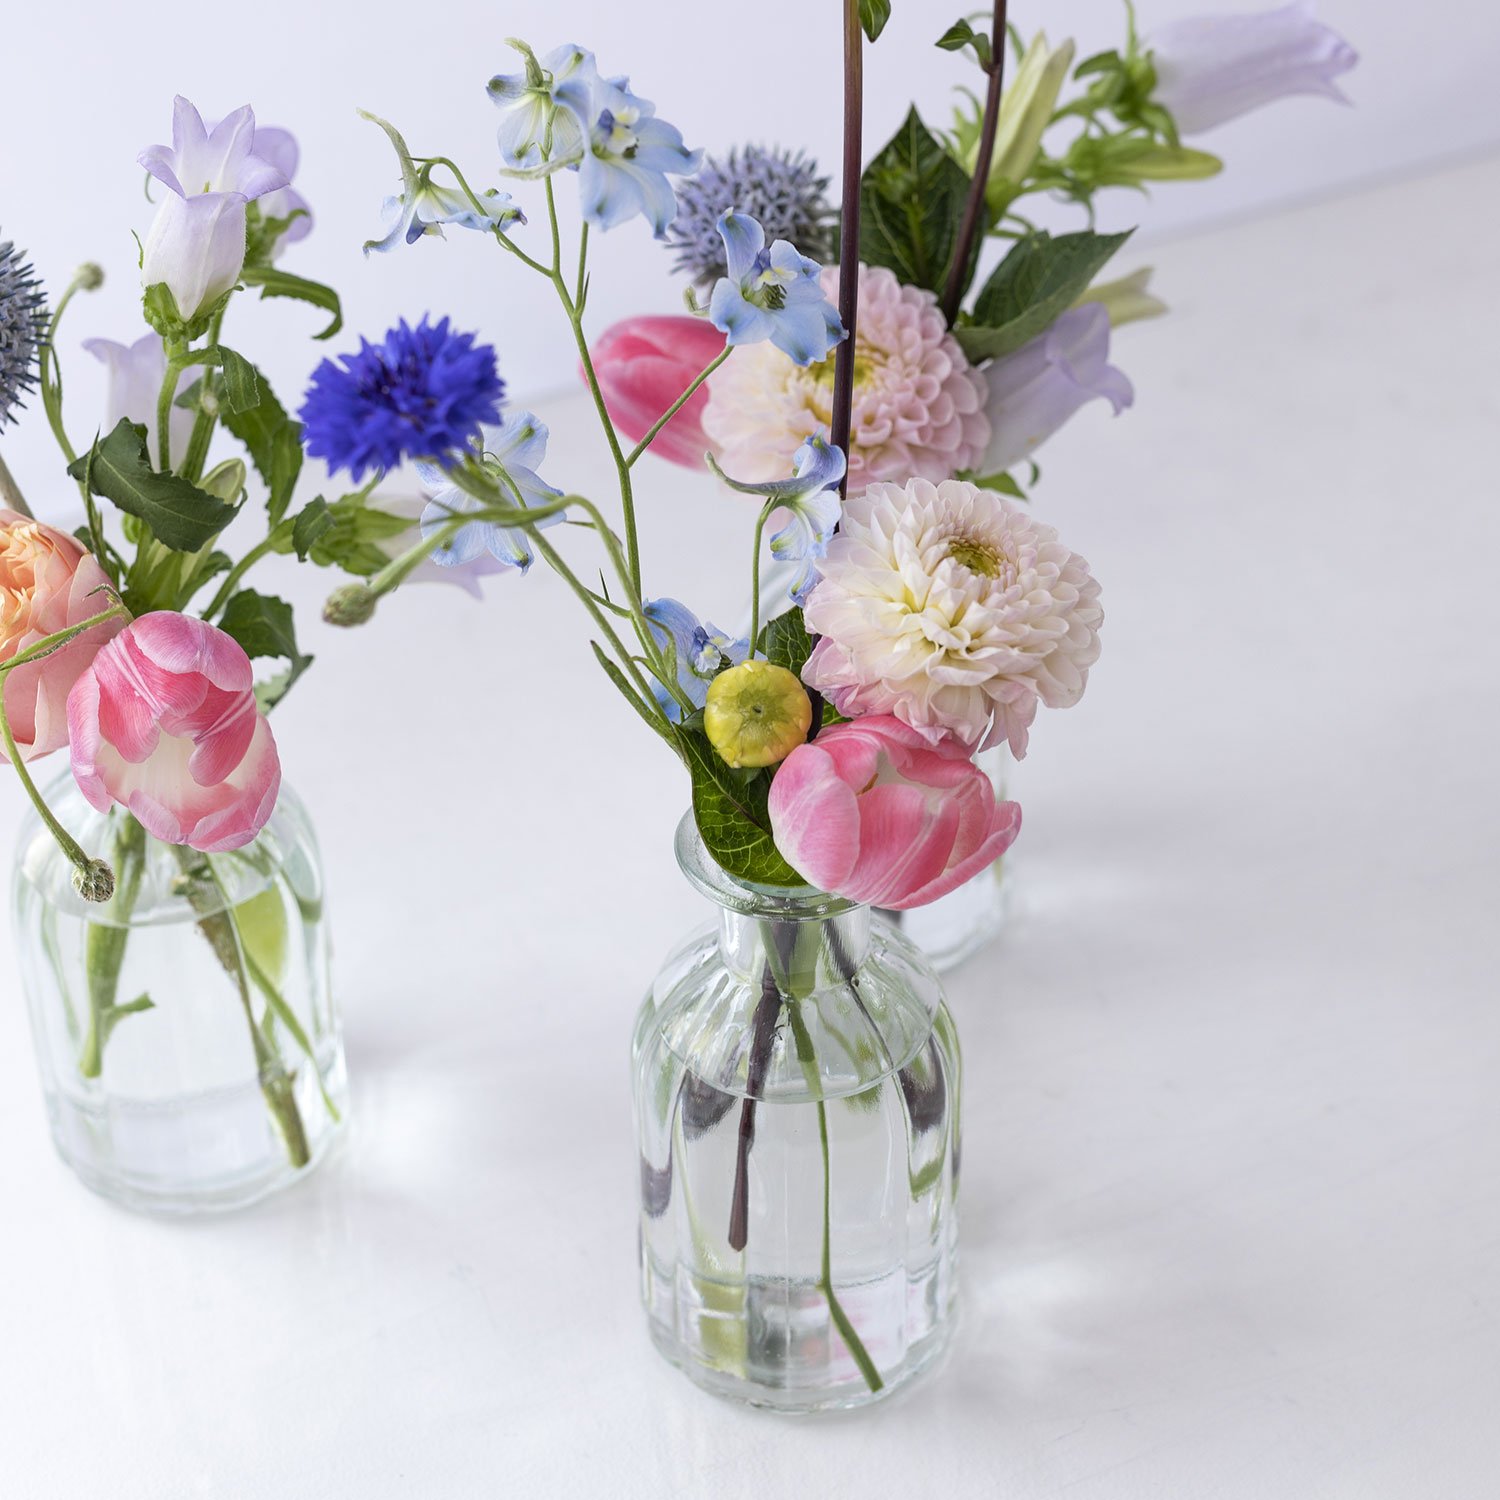 In Bloom Coloured Bud Vases — Set of Three — in bloom studio